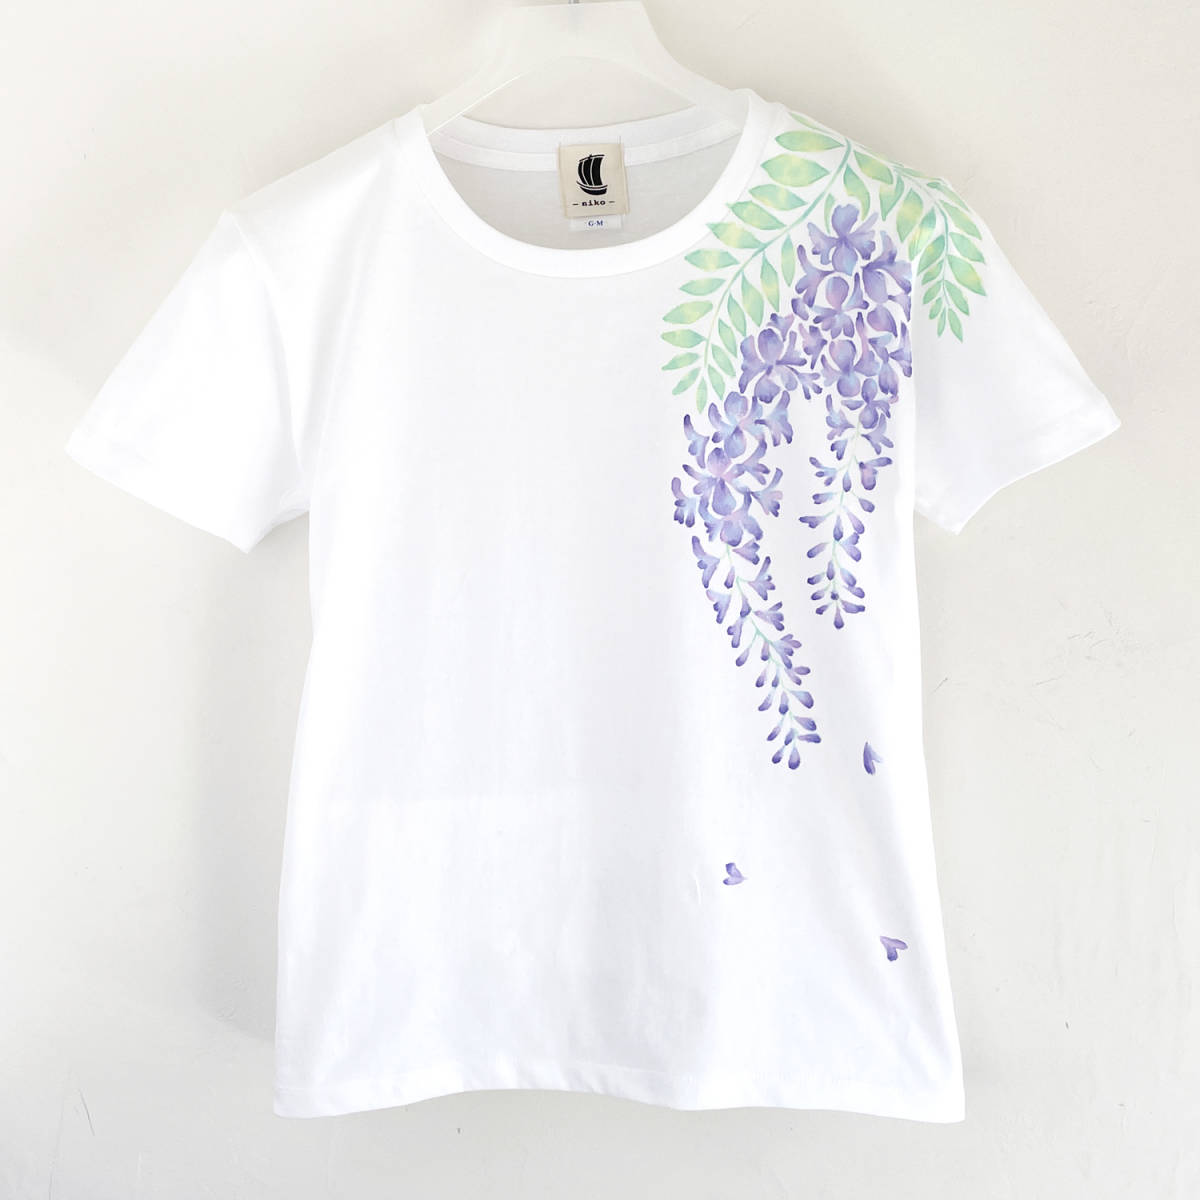 Damen-T-Shirt, Größe M, Weiß, T-Shirt mit Glyzinien-Blumenmuster, handgefertigt, handbemaltes T-Shirt, Mittlere Größe, Rundhals, Gemustert